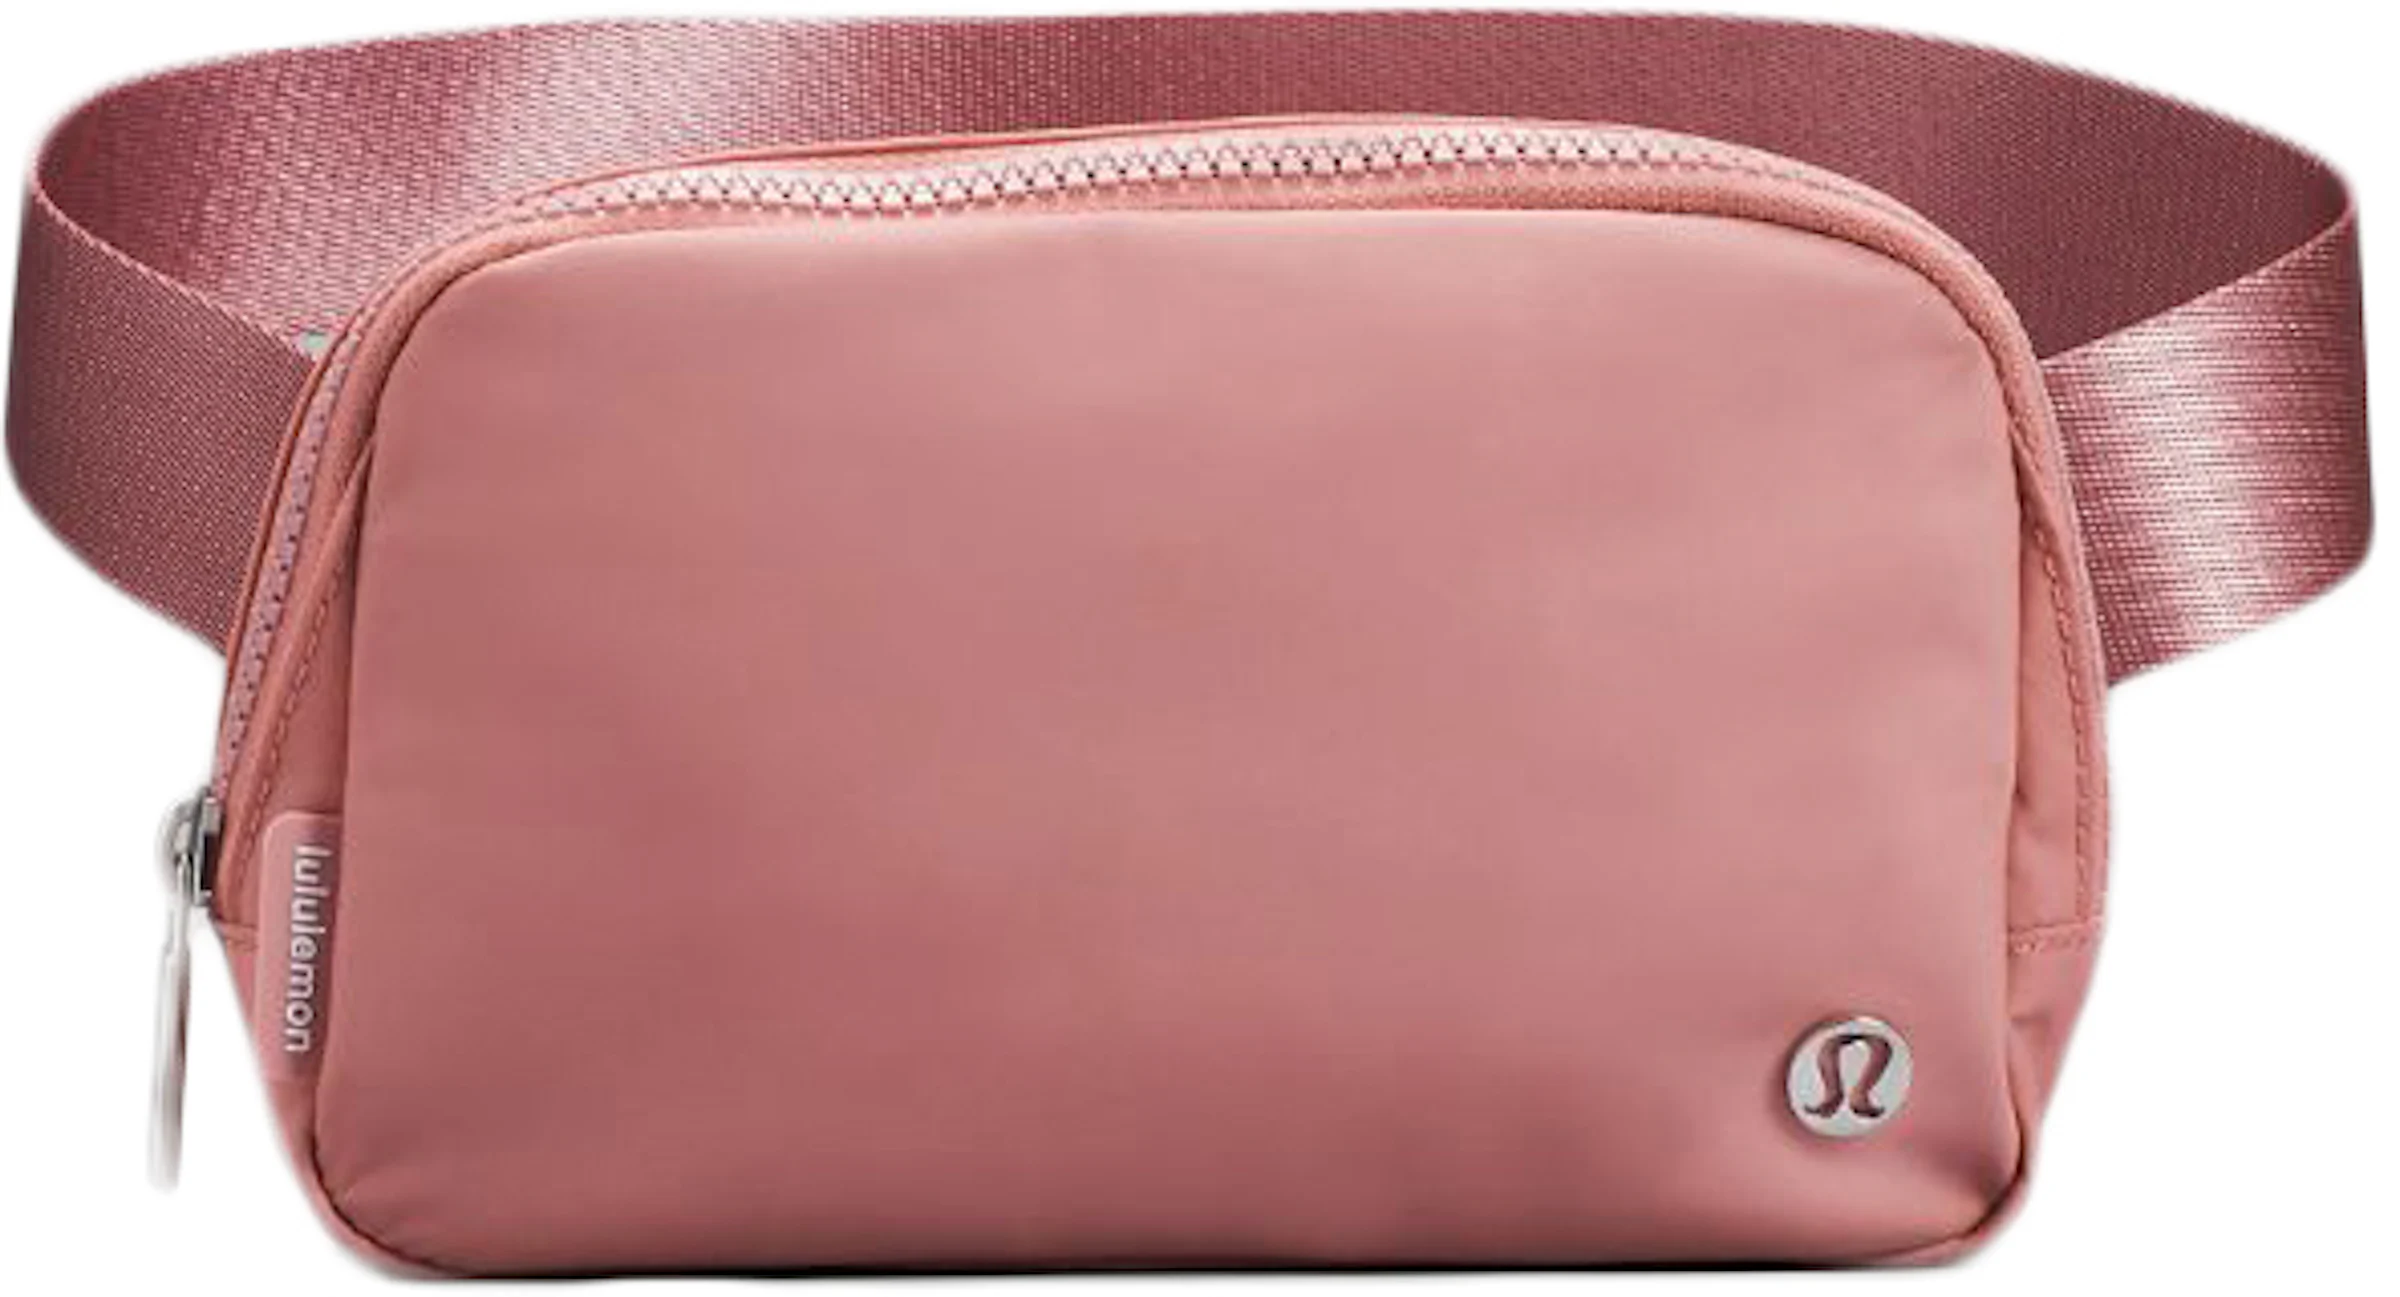 Lululemon Everywhere Belt Bag Crossbody Bag Pink Pastel in Waterproof  Polyester - US